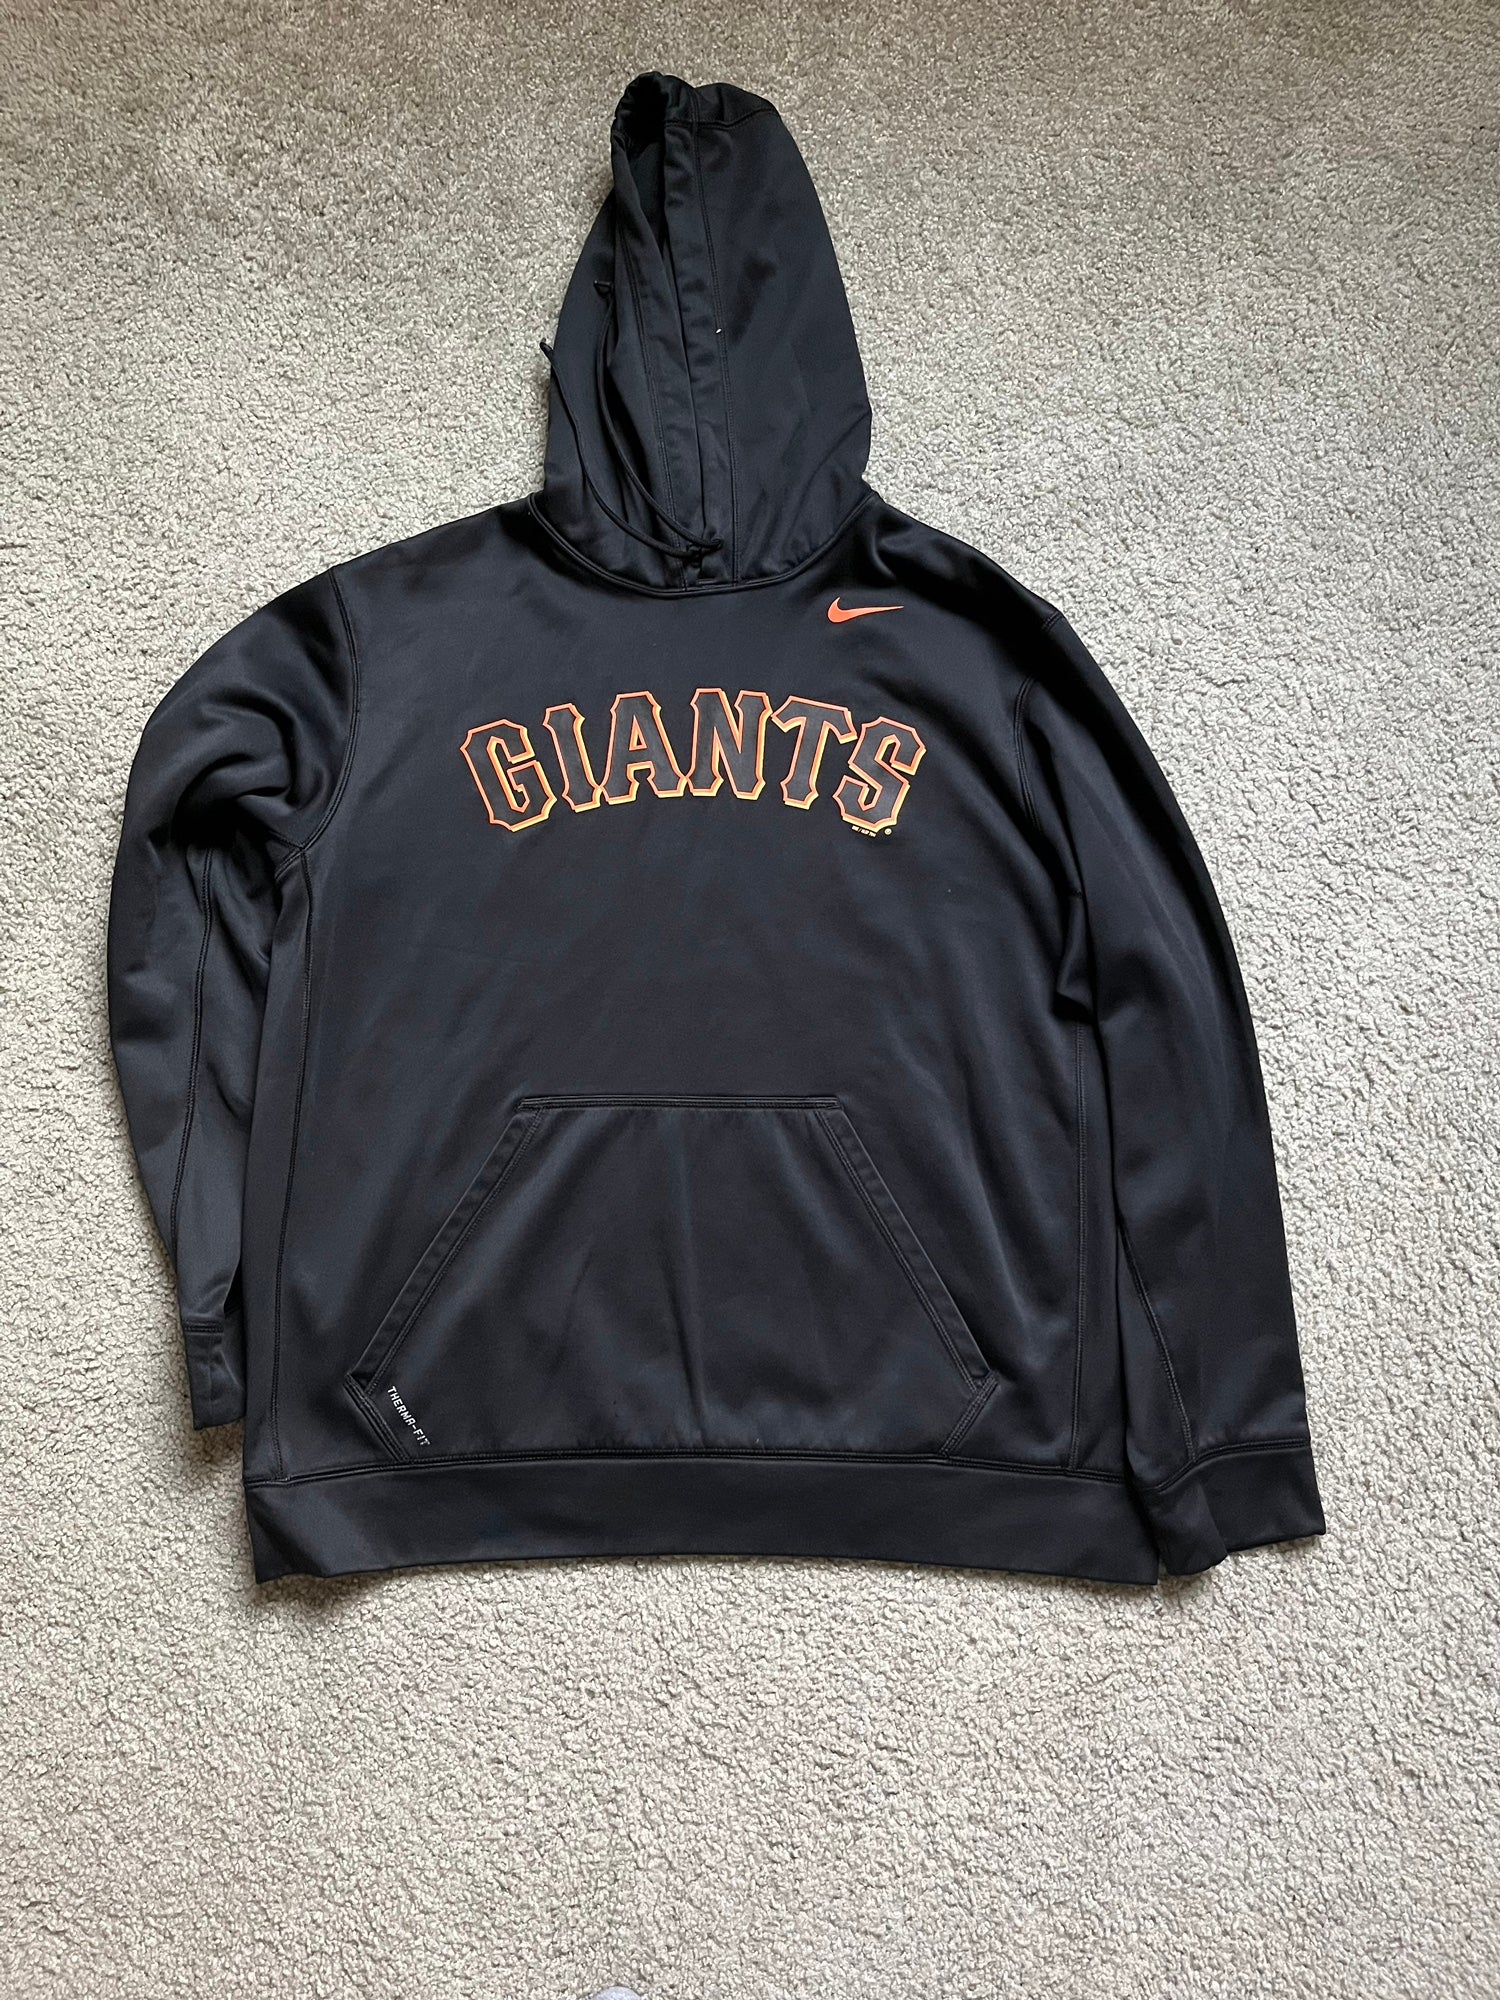 used XL Nike Sweatshirts SF Giants & UW